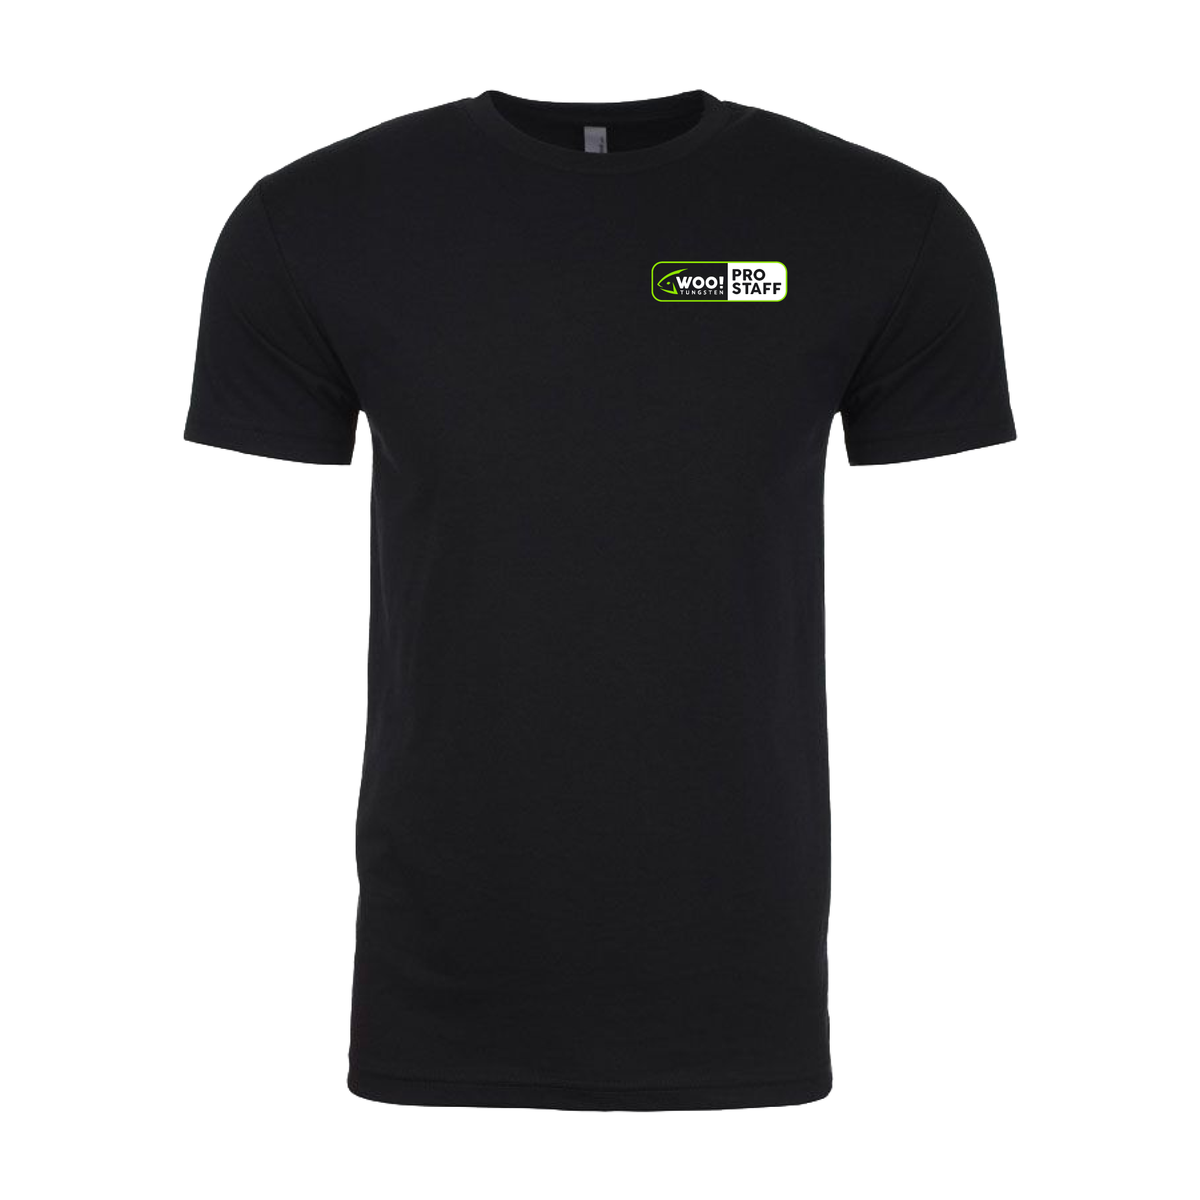 Pro Staff Team T-Shirt (Black) – WOO! TUNGSTEN